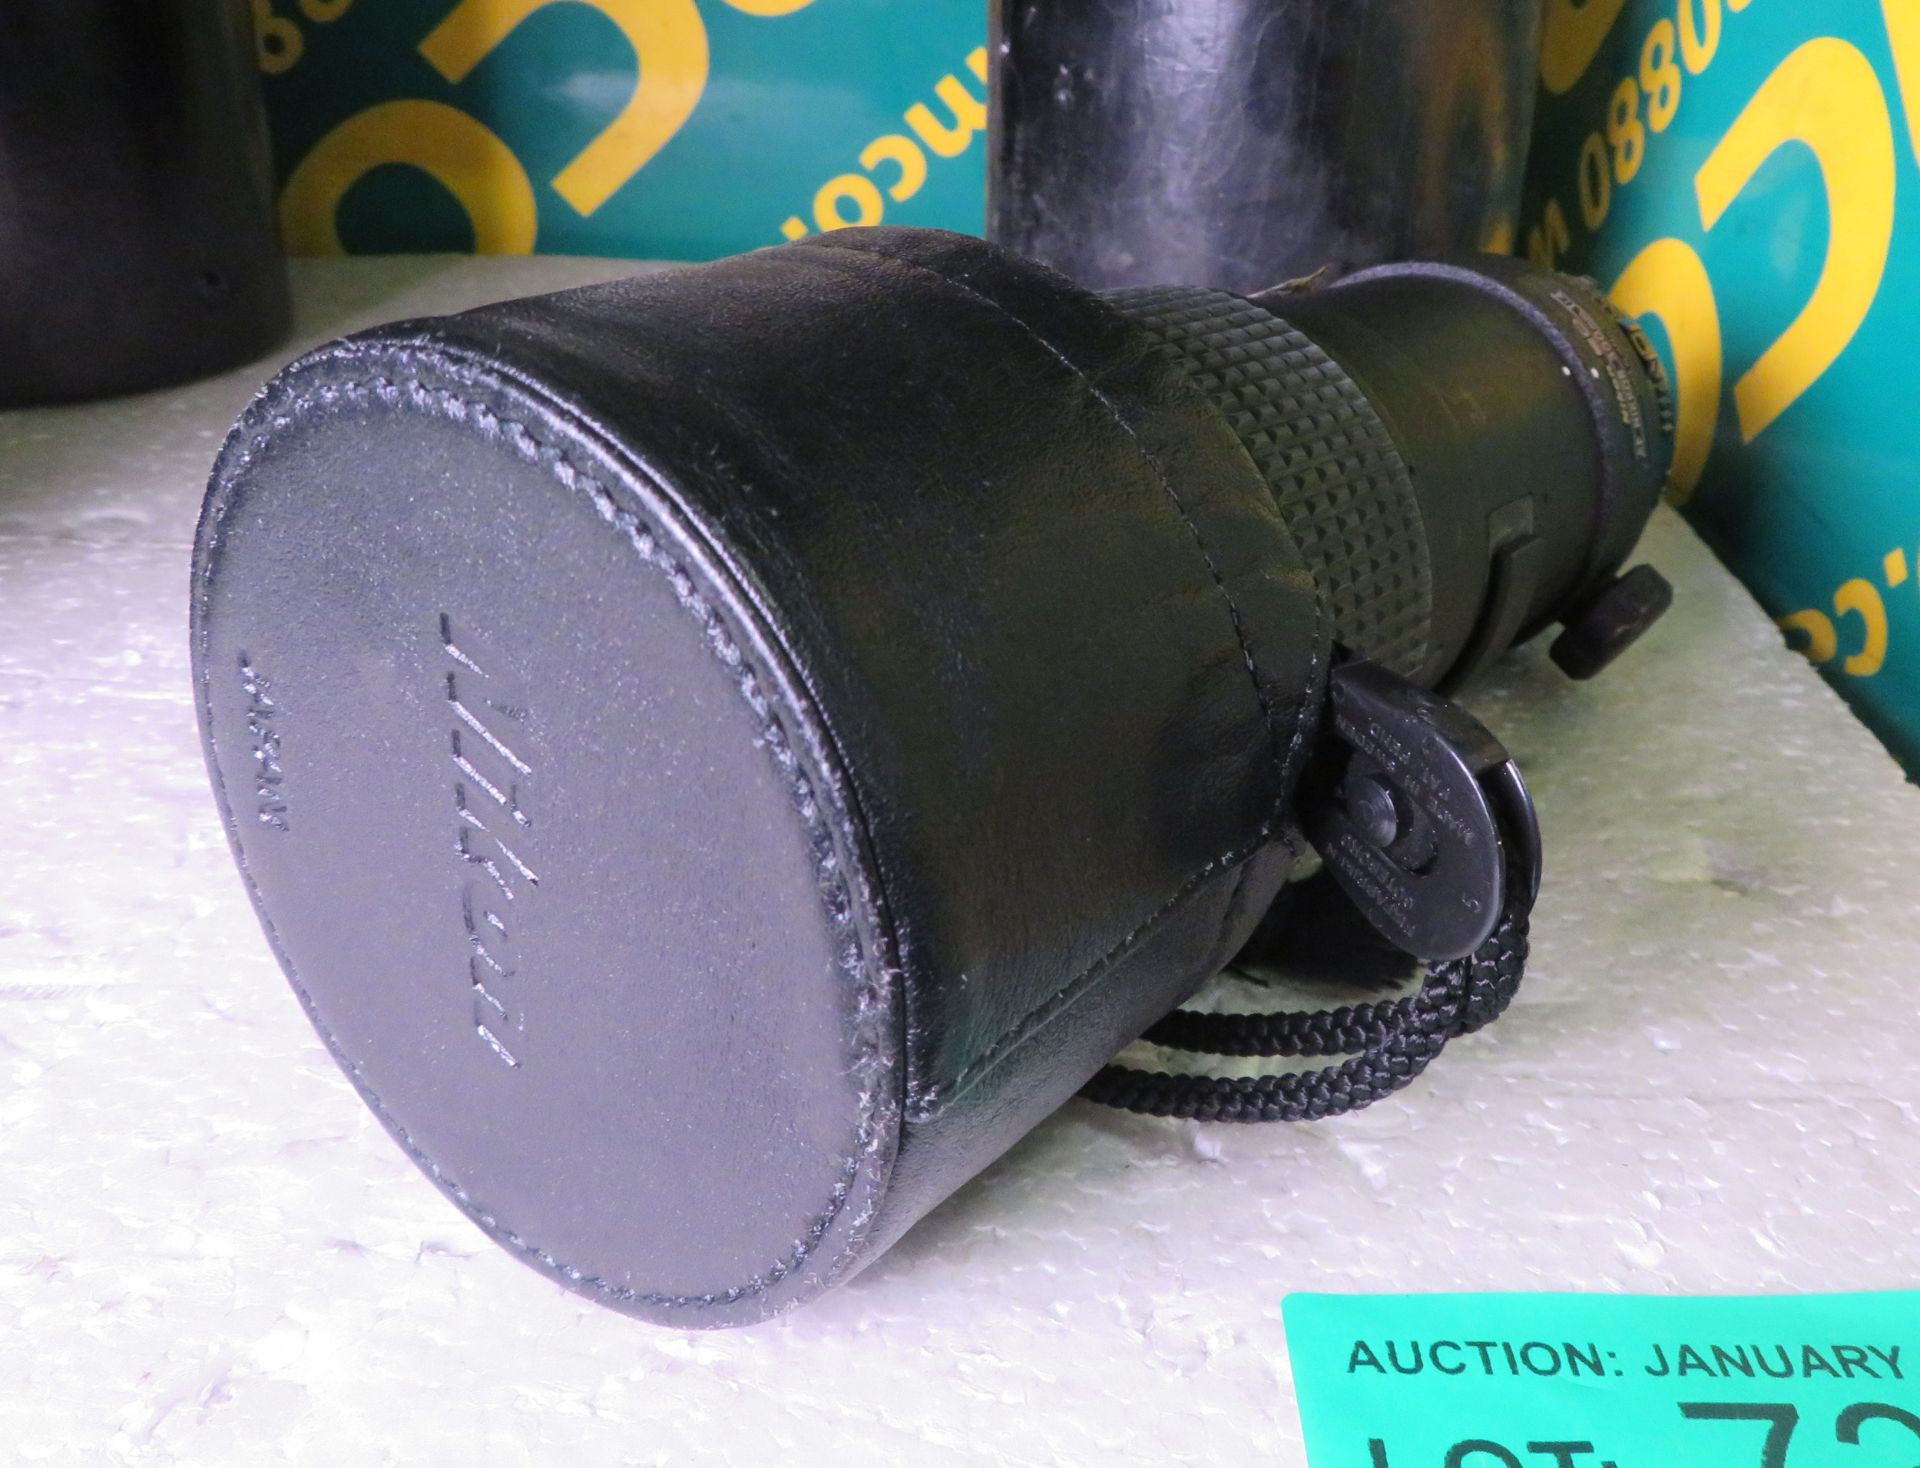 Nikon ED AF Nikkor 300mm 1:4 Lens - serial no. 214411 & Nikon CL-42 Case - Image 2 of 5